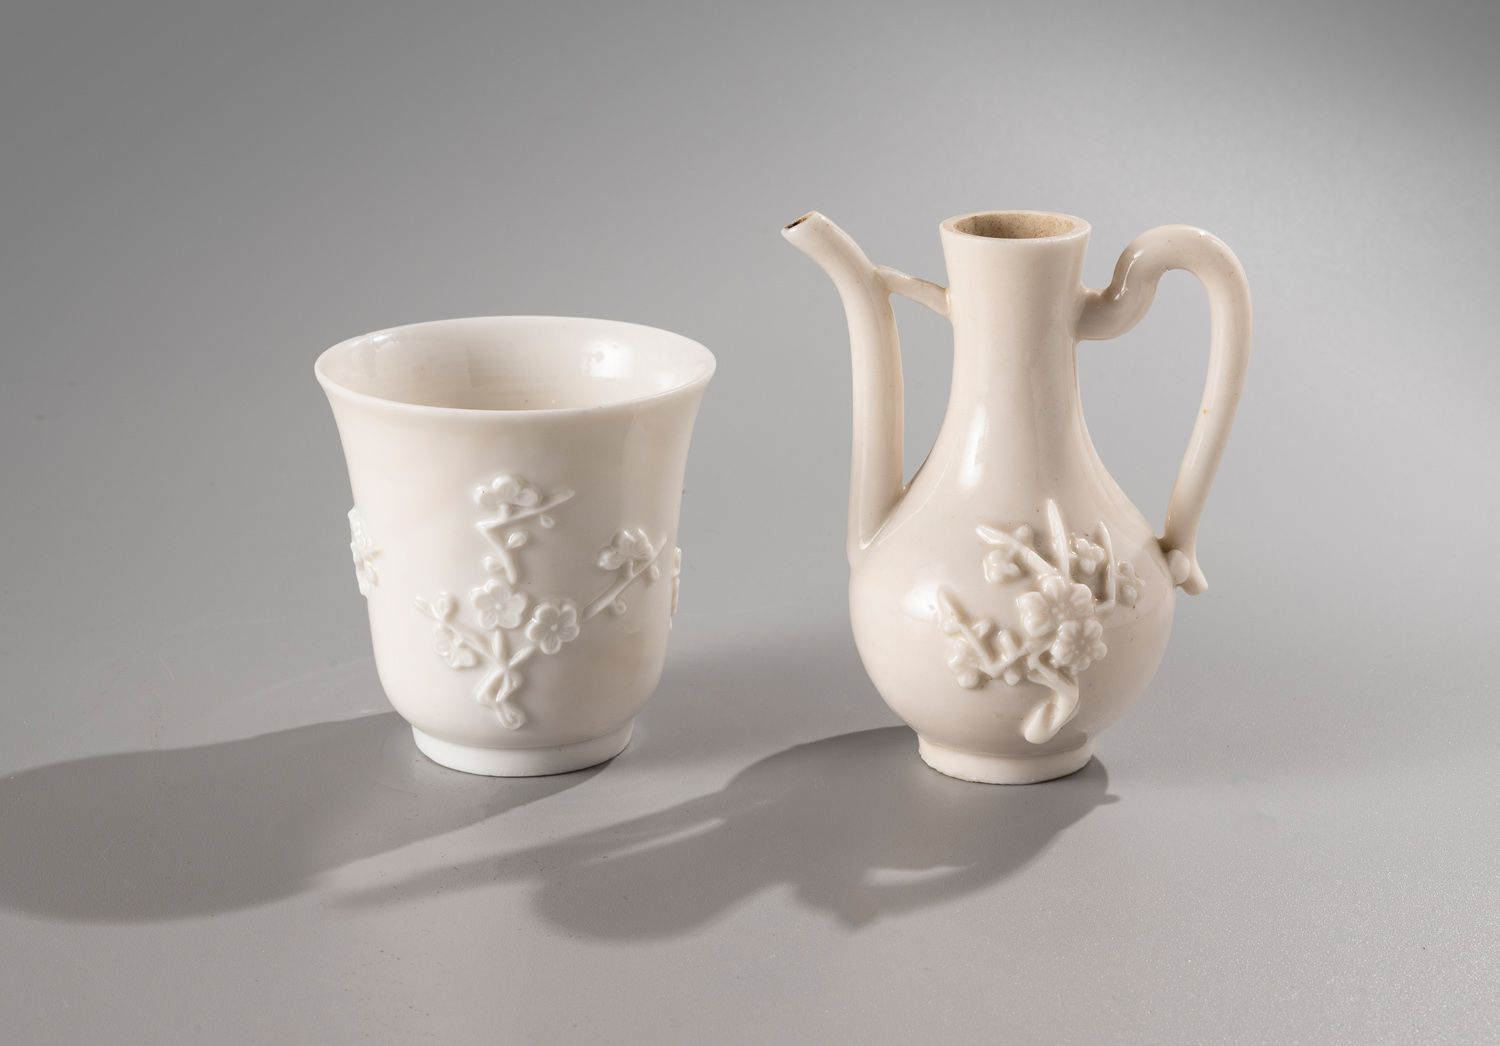 Null 中国，康熙时期，18世纪

两件中国白瓷拍品，包括一个郁金香形碗

郁金香的形式，装饰着梅花的图案。

鲜花略显浮躁；还有一个咖啡壶

H.8厘米和1&hellip;